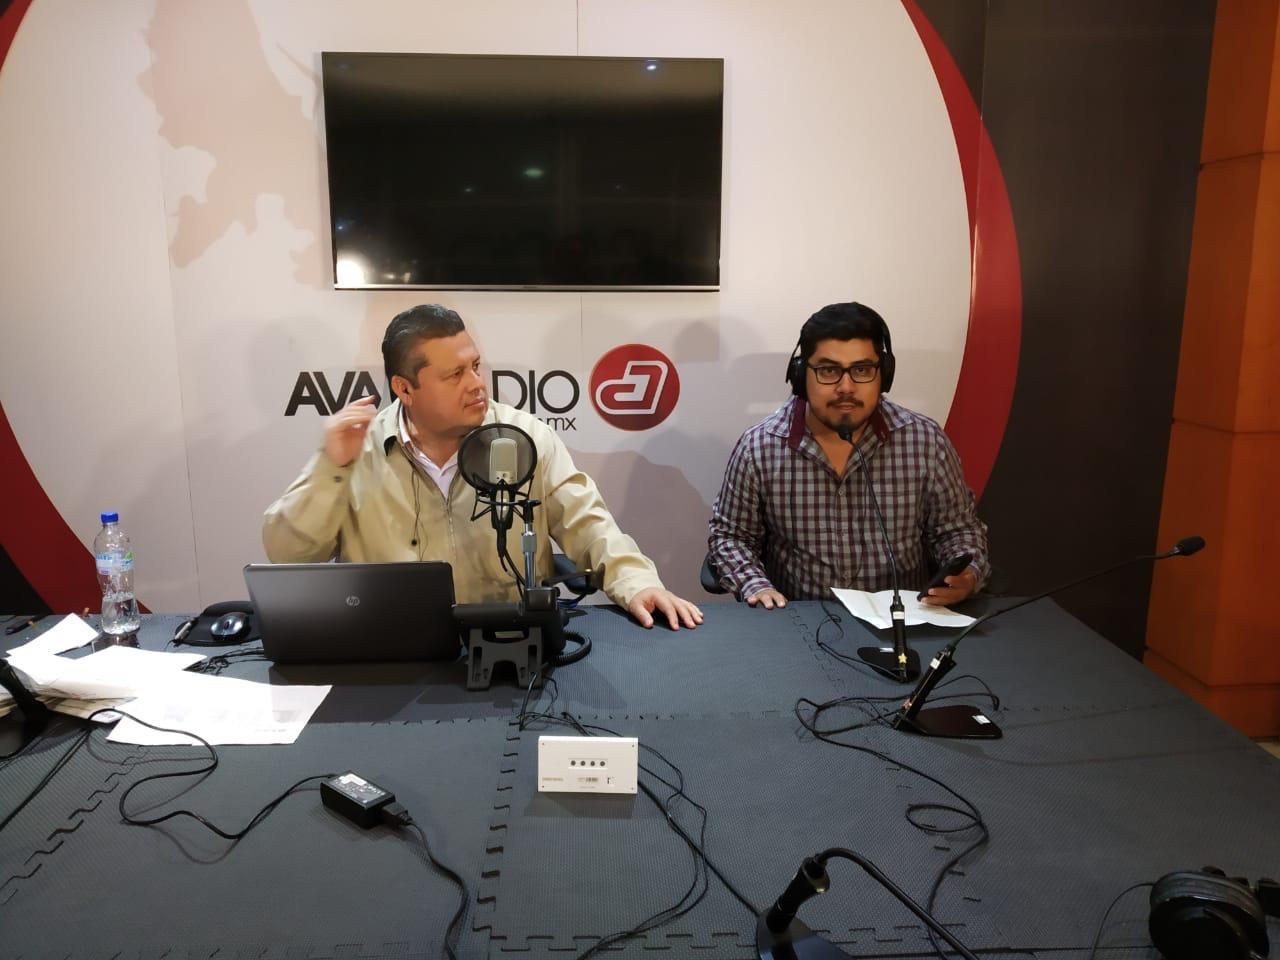 LSR Veracruz y E-Consulta Veracruz tejen alianza con Avan Radio